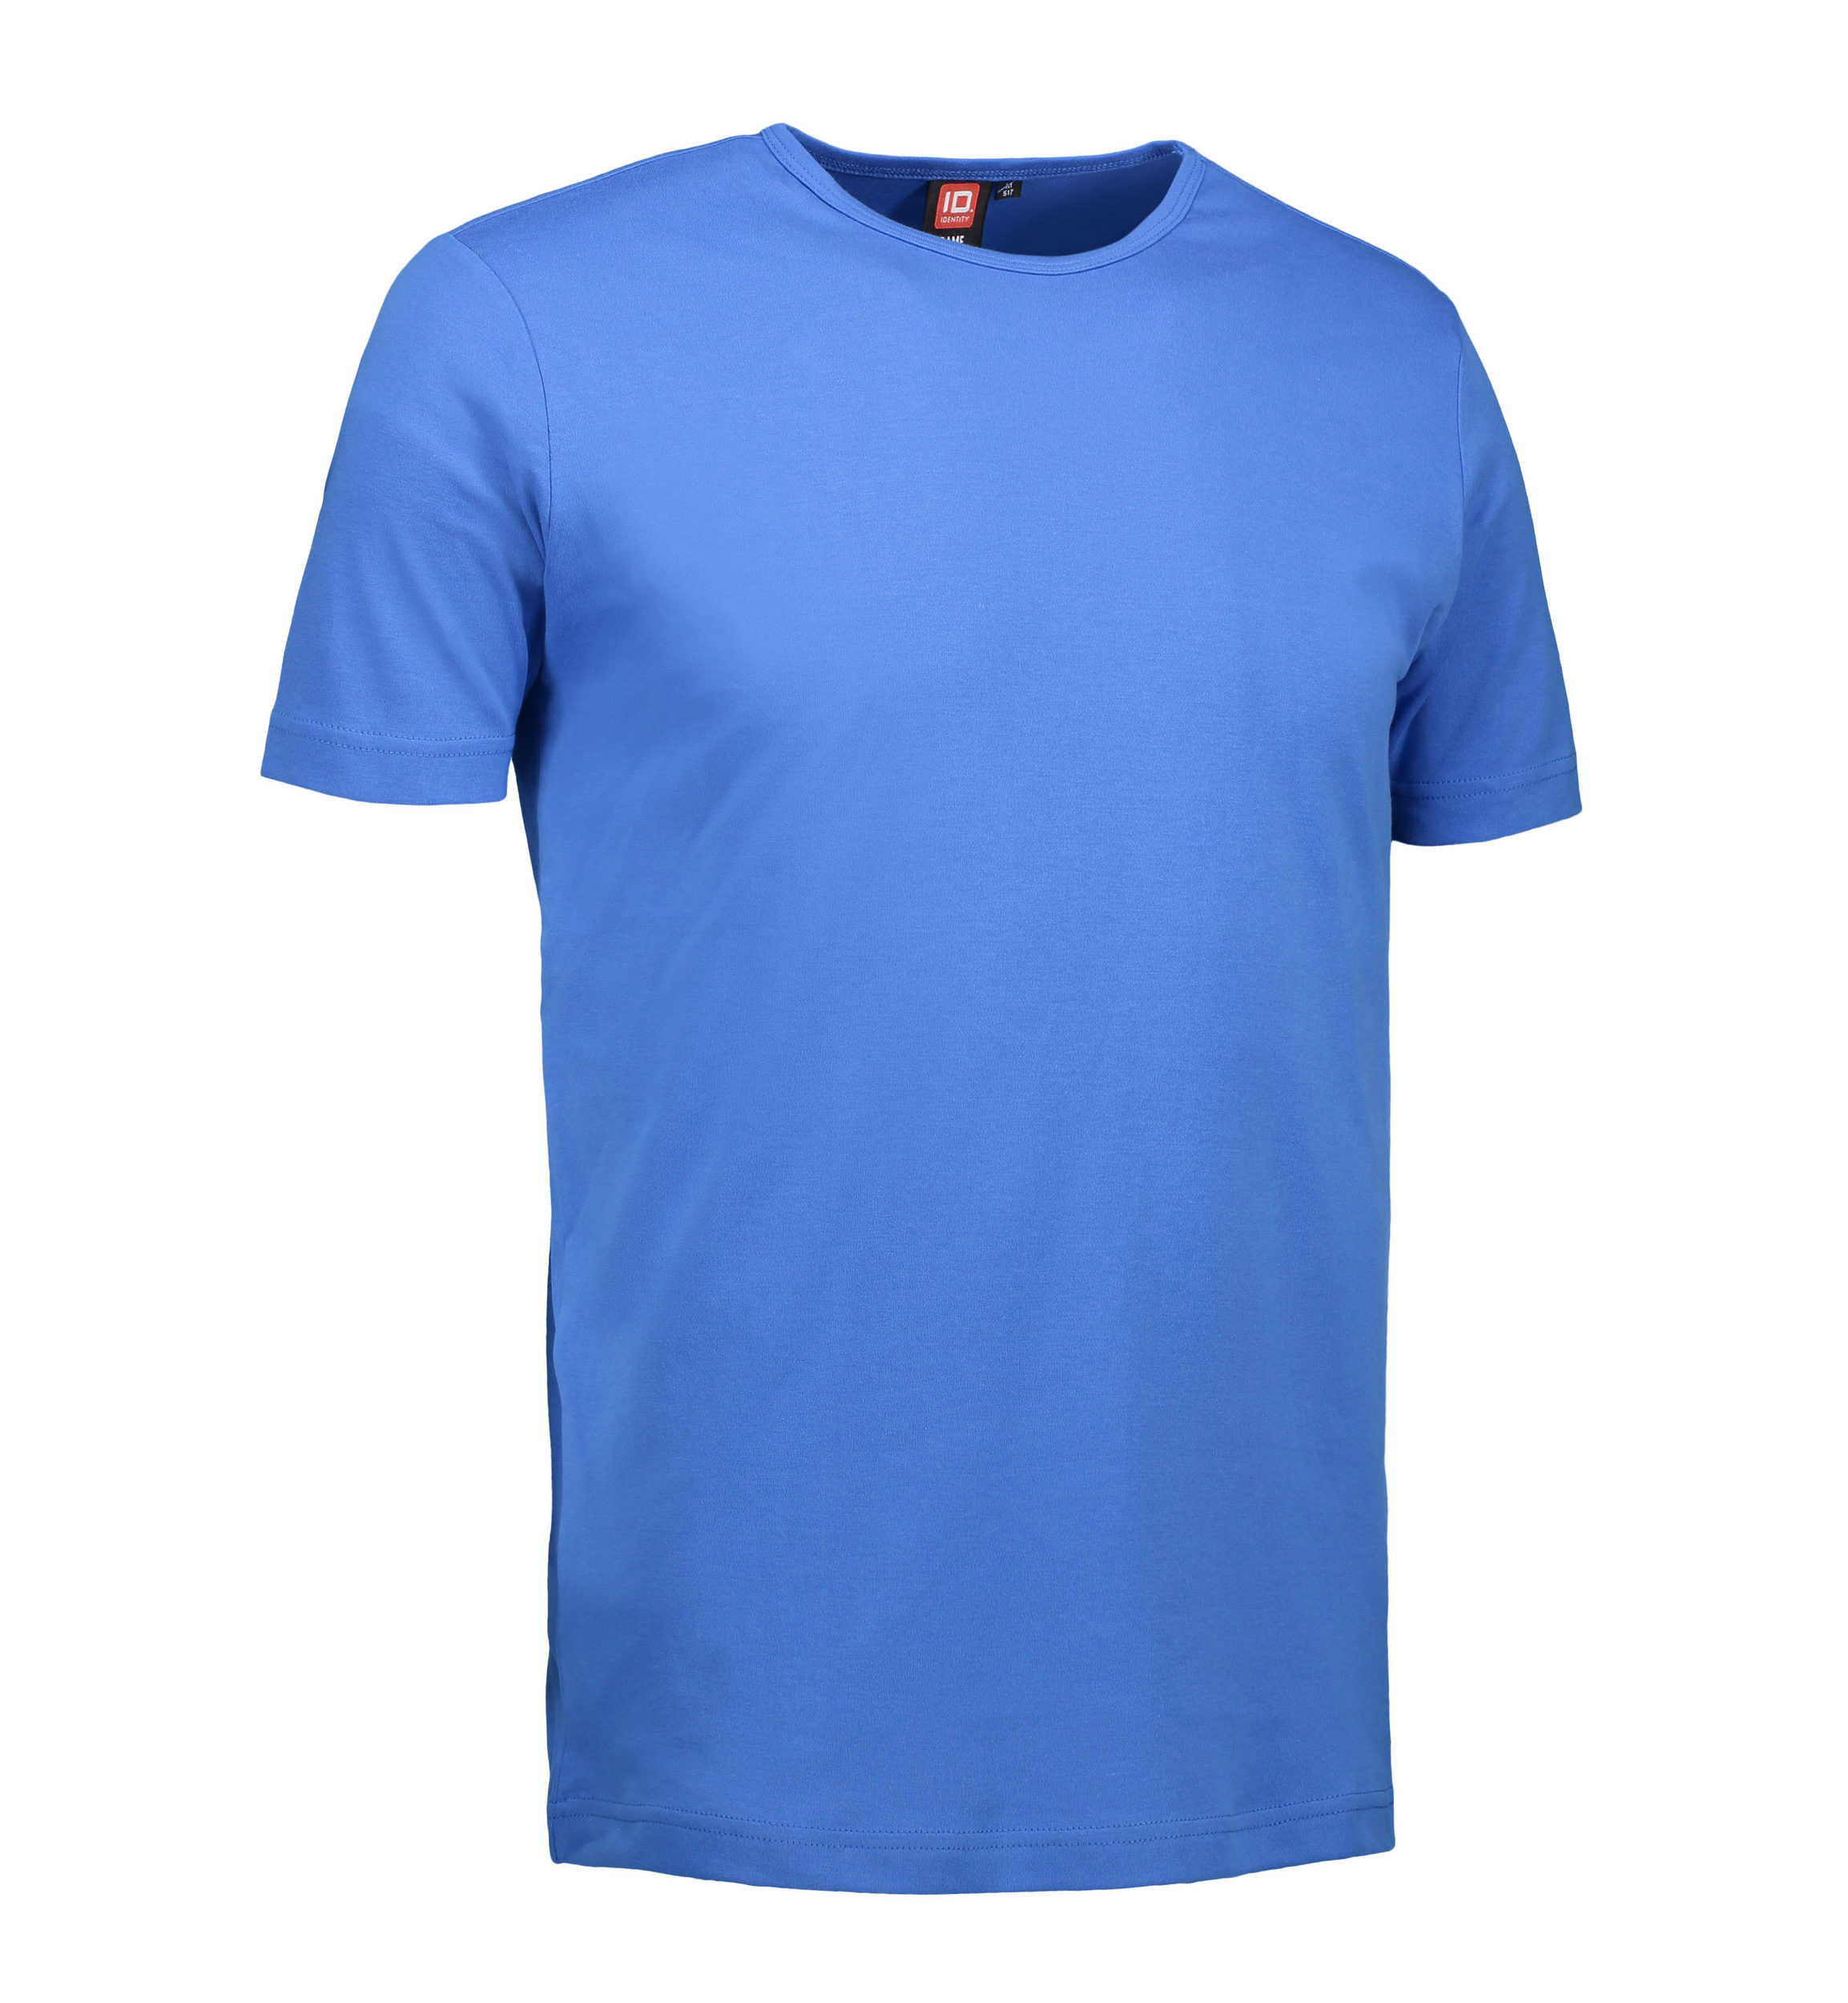 Billede af Blå t-shirt med rund hals til mænd - XL hos Sygeplejebutikken.dk